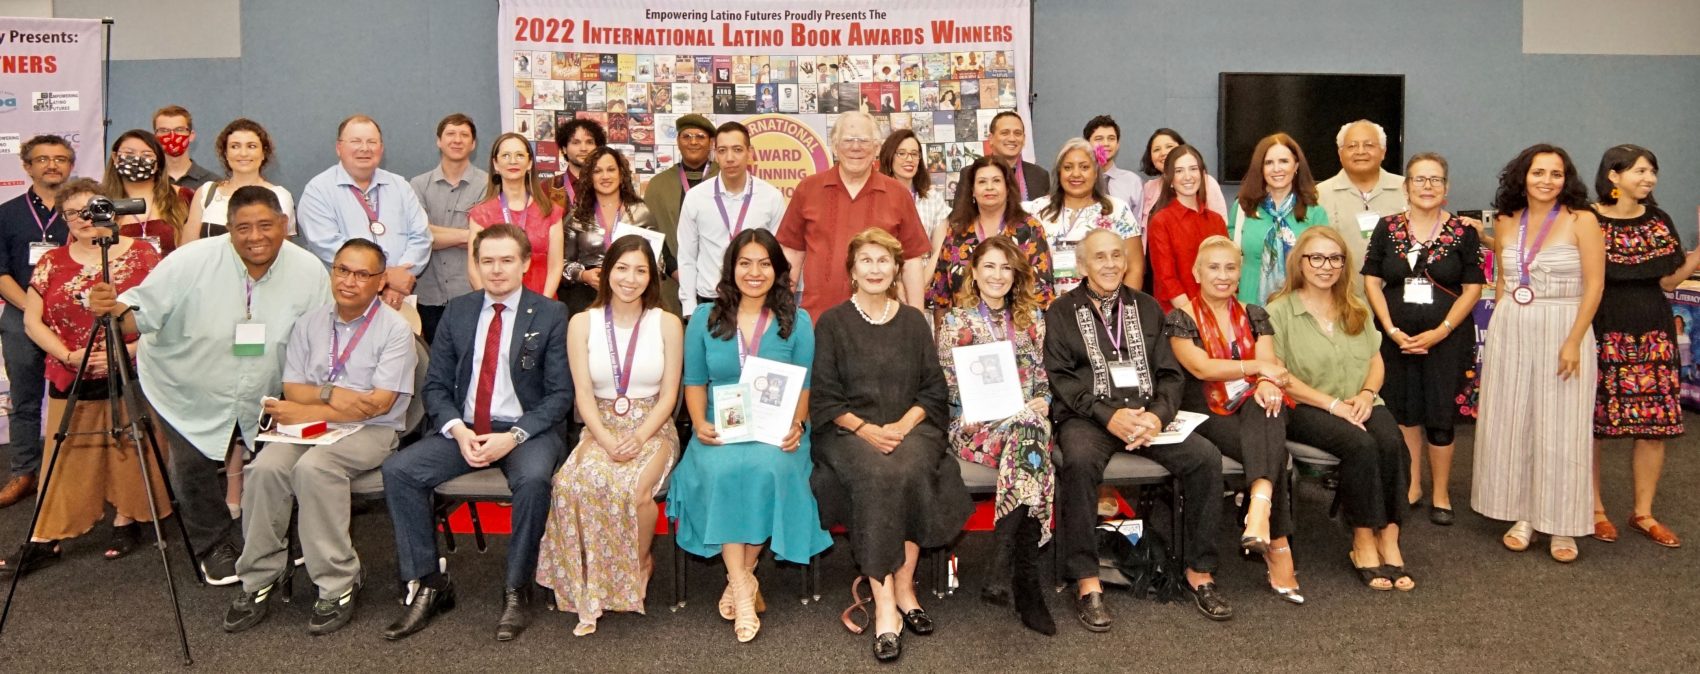 Ceremonia de reconocimientos del Libro Latino celebra 25 años